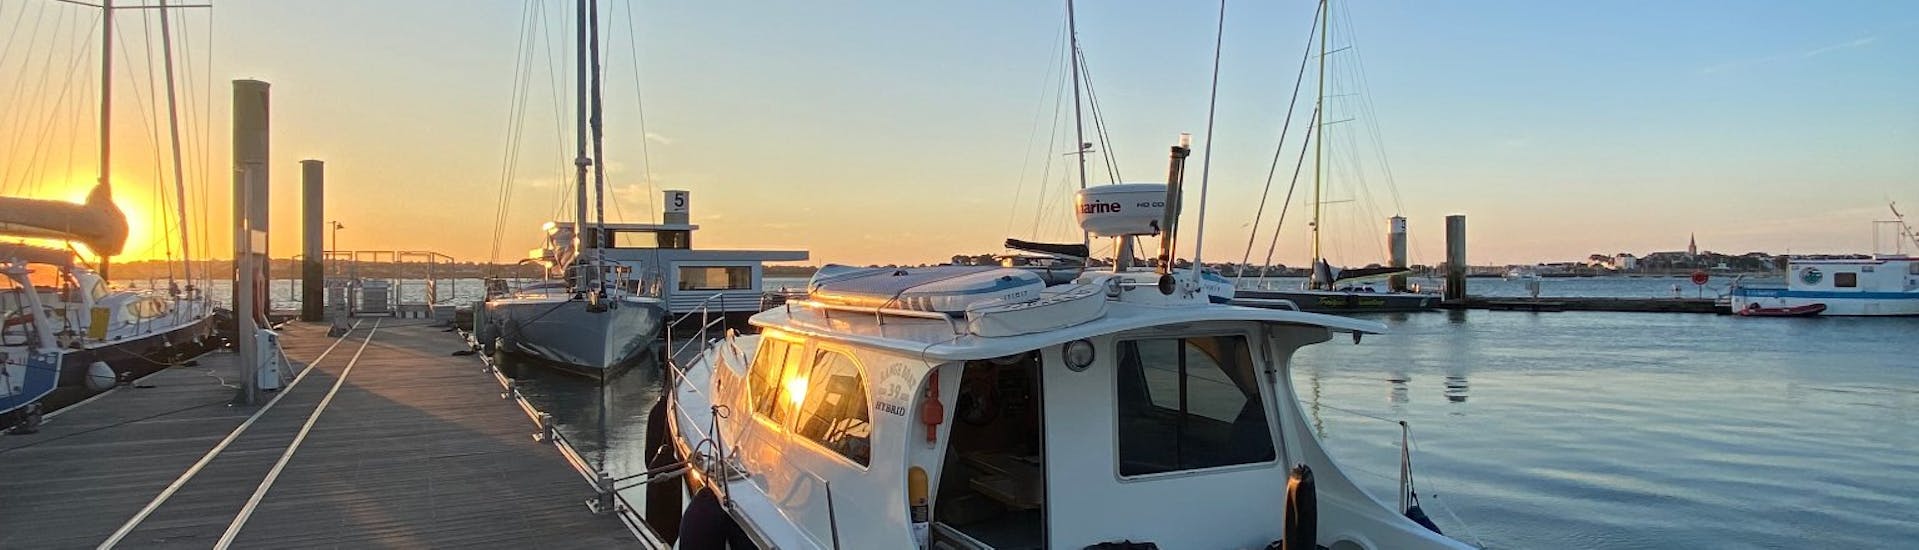 Un Bild des KeyLargo-Bootes im Hafen bei Sonnenuntergang.